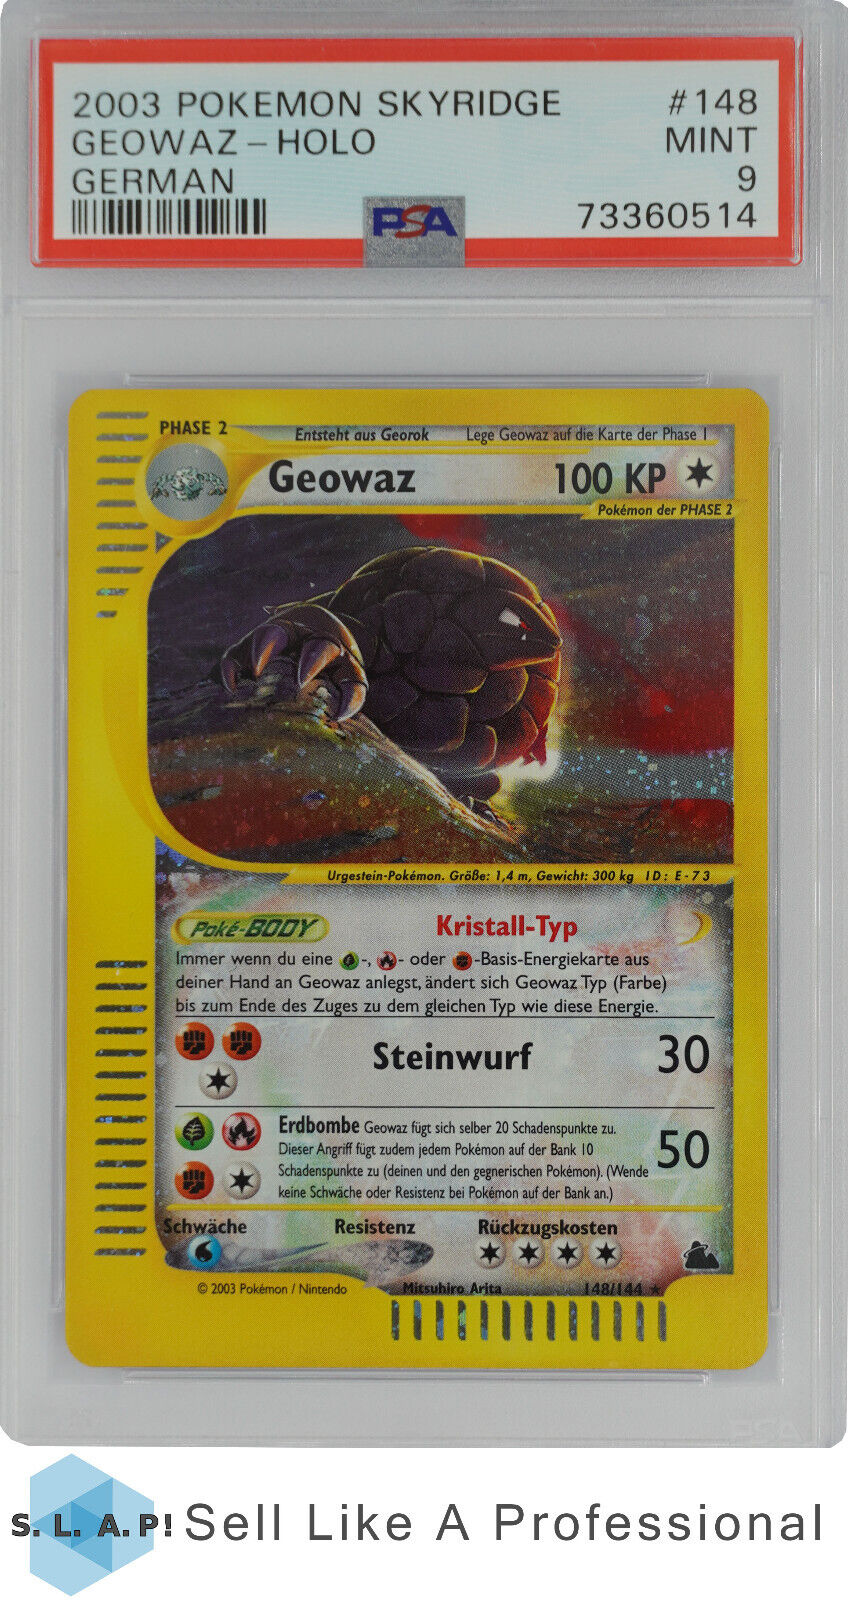 2003 Pokemon Skyridge German Geowaz Holo 148 PSA 9